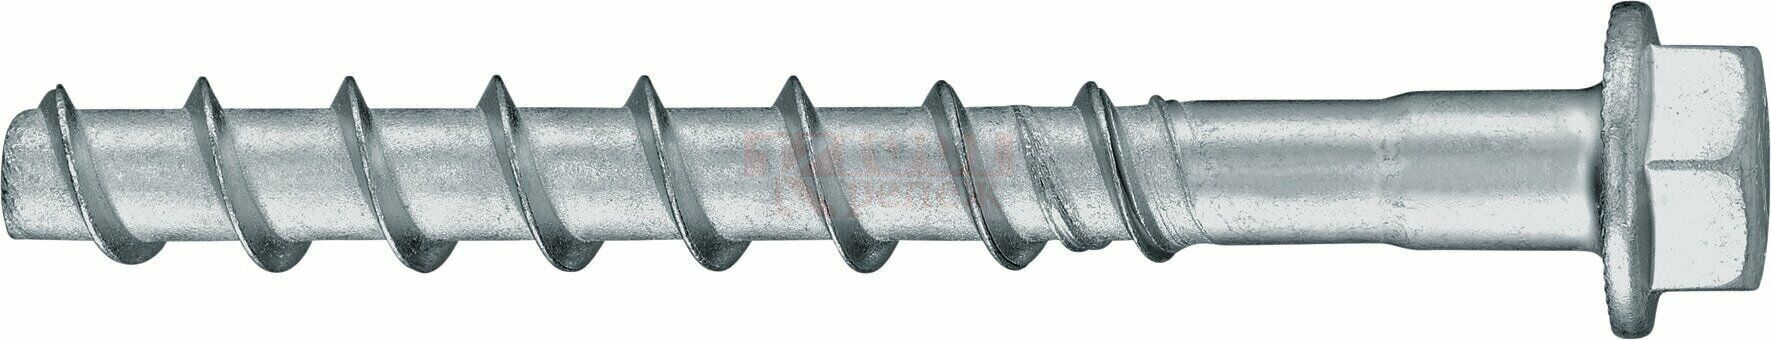 HUS2-H 8/10 10x60 Анкер-шуруп HILTI для бетона оц. сталь, 10x60 5/- мм